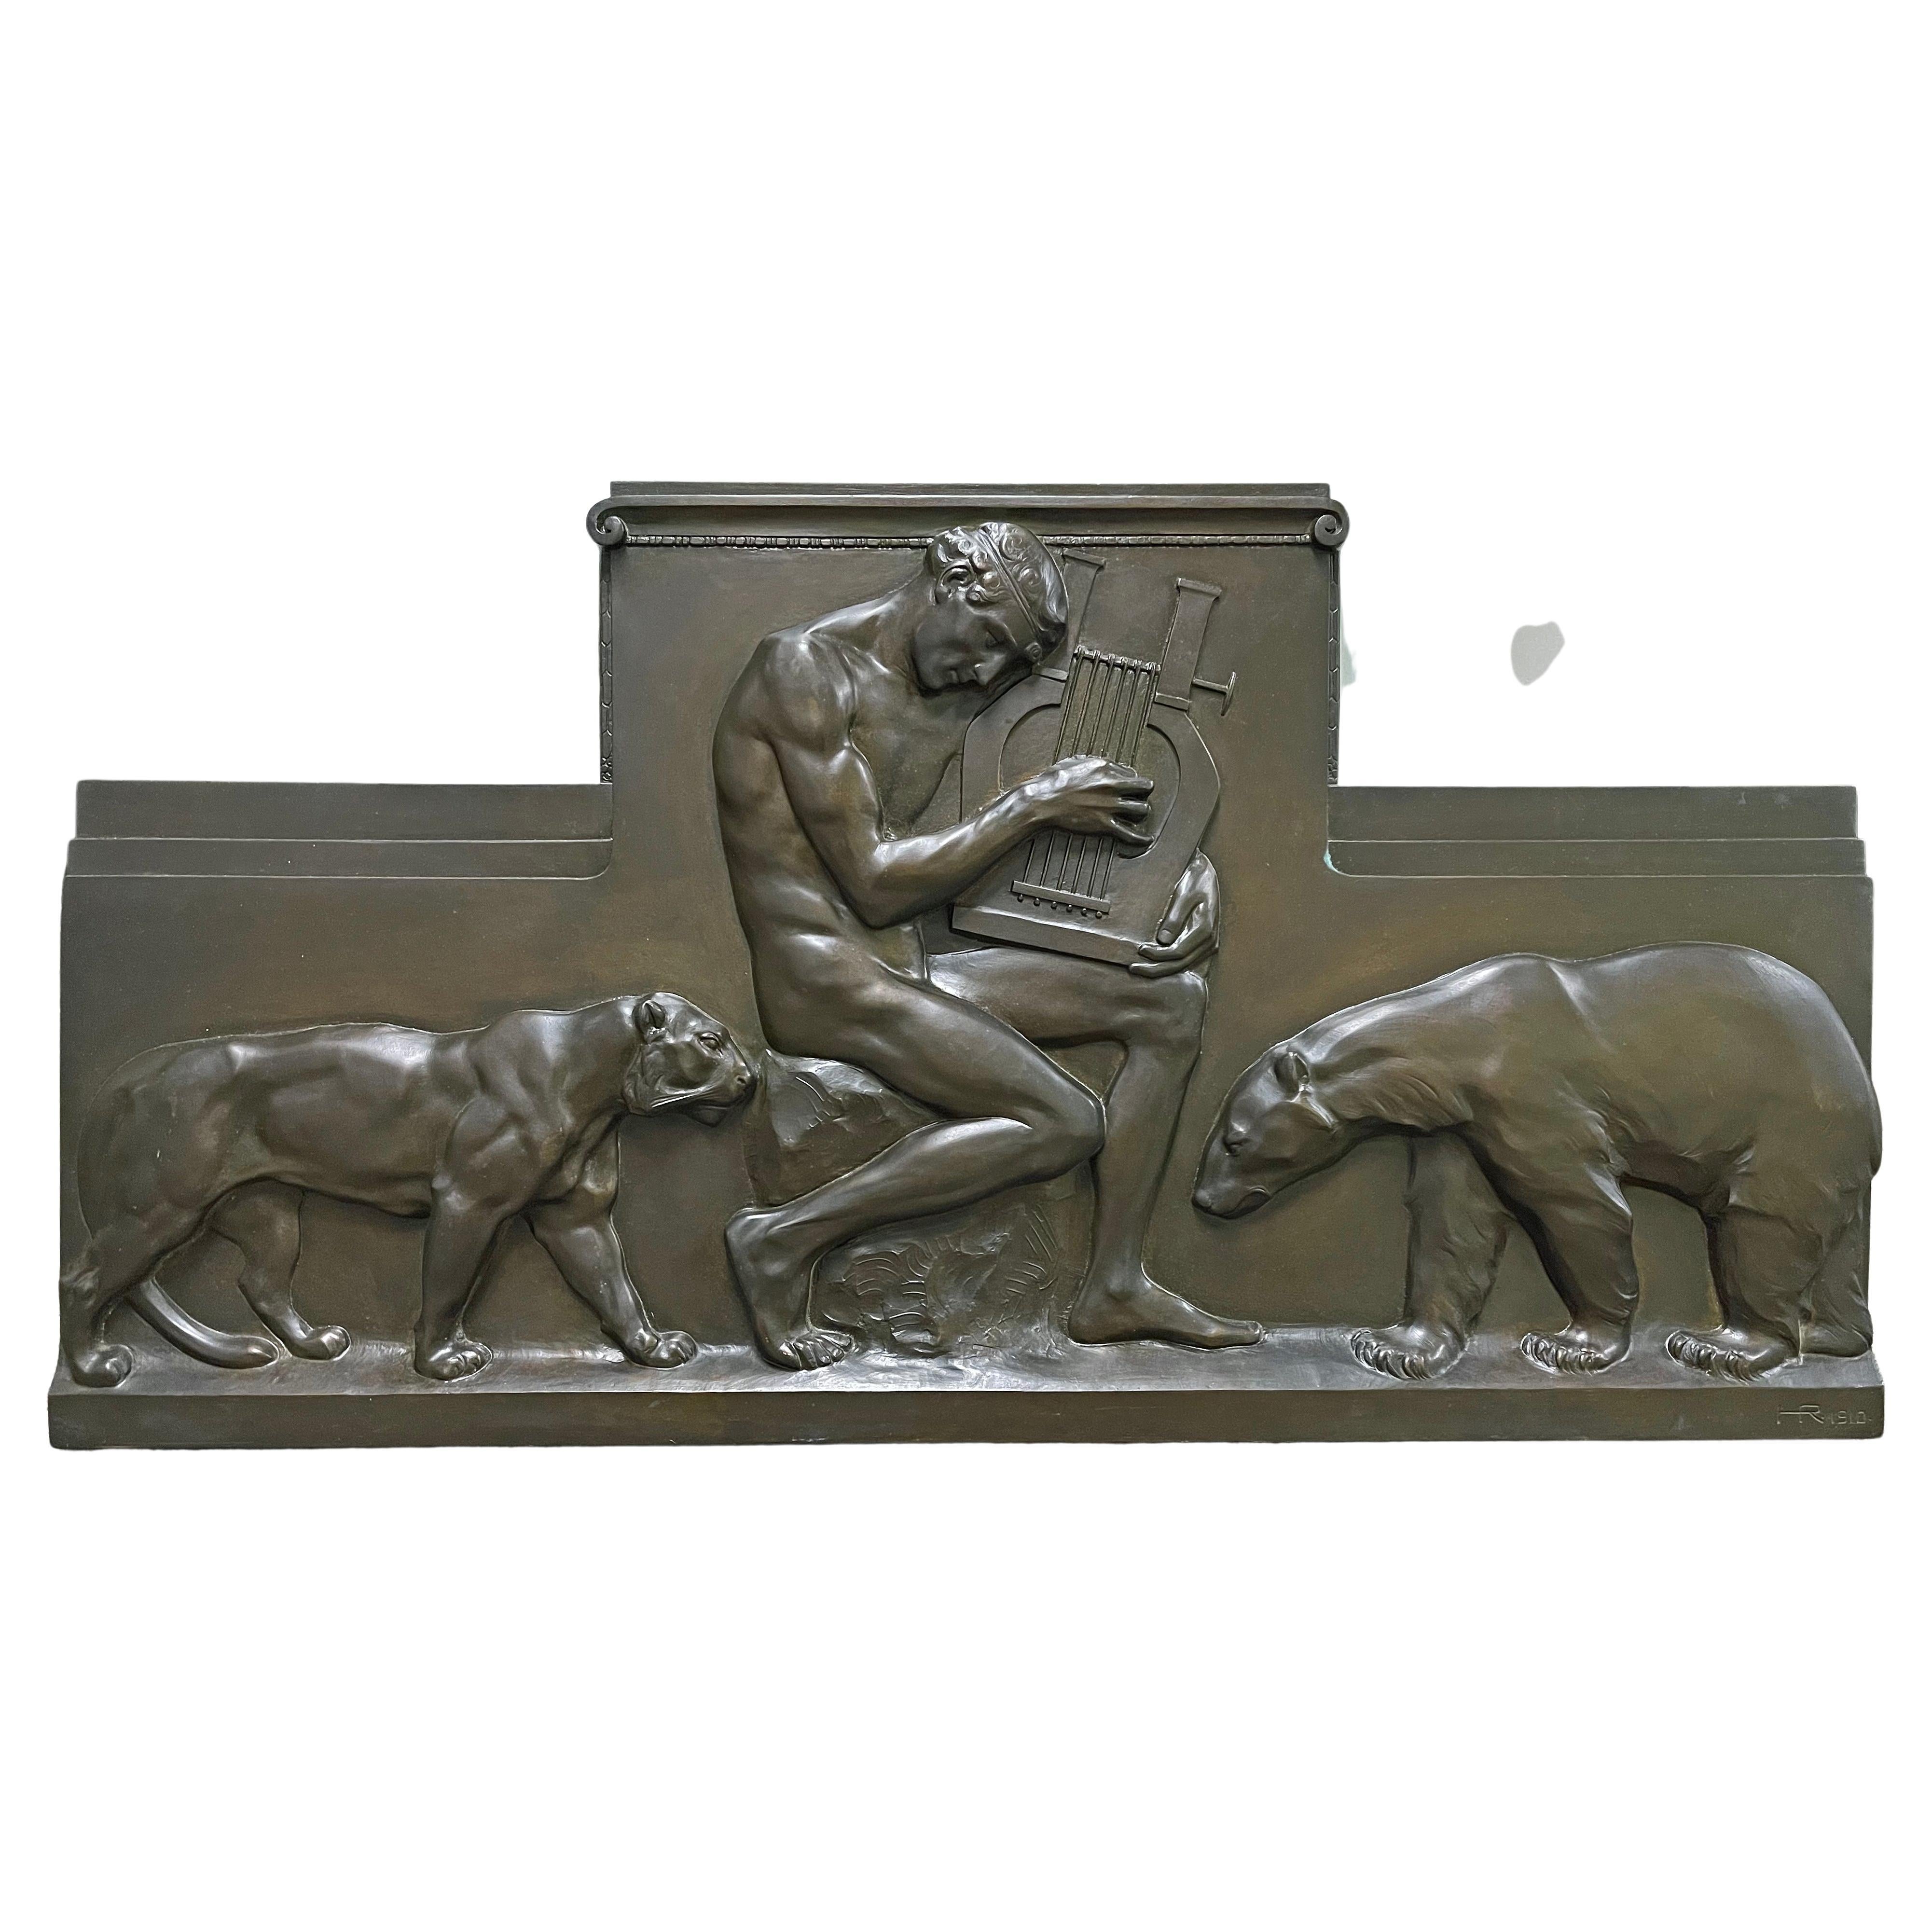 « Orphée charmant les animaux », relief en bronze monumental avec nu masculin, 1910